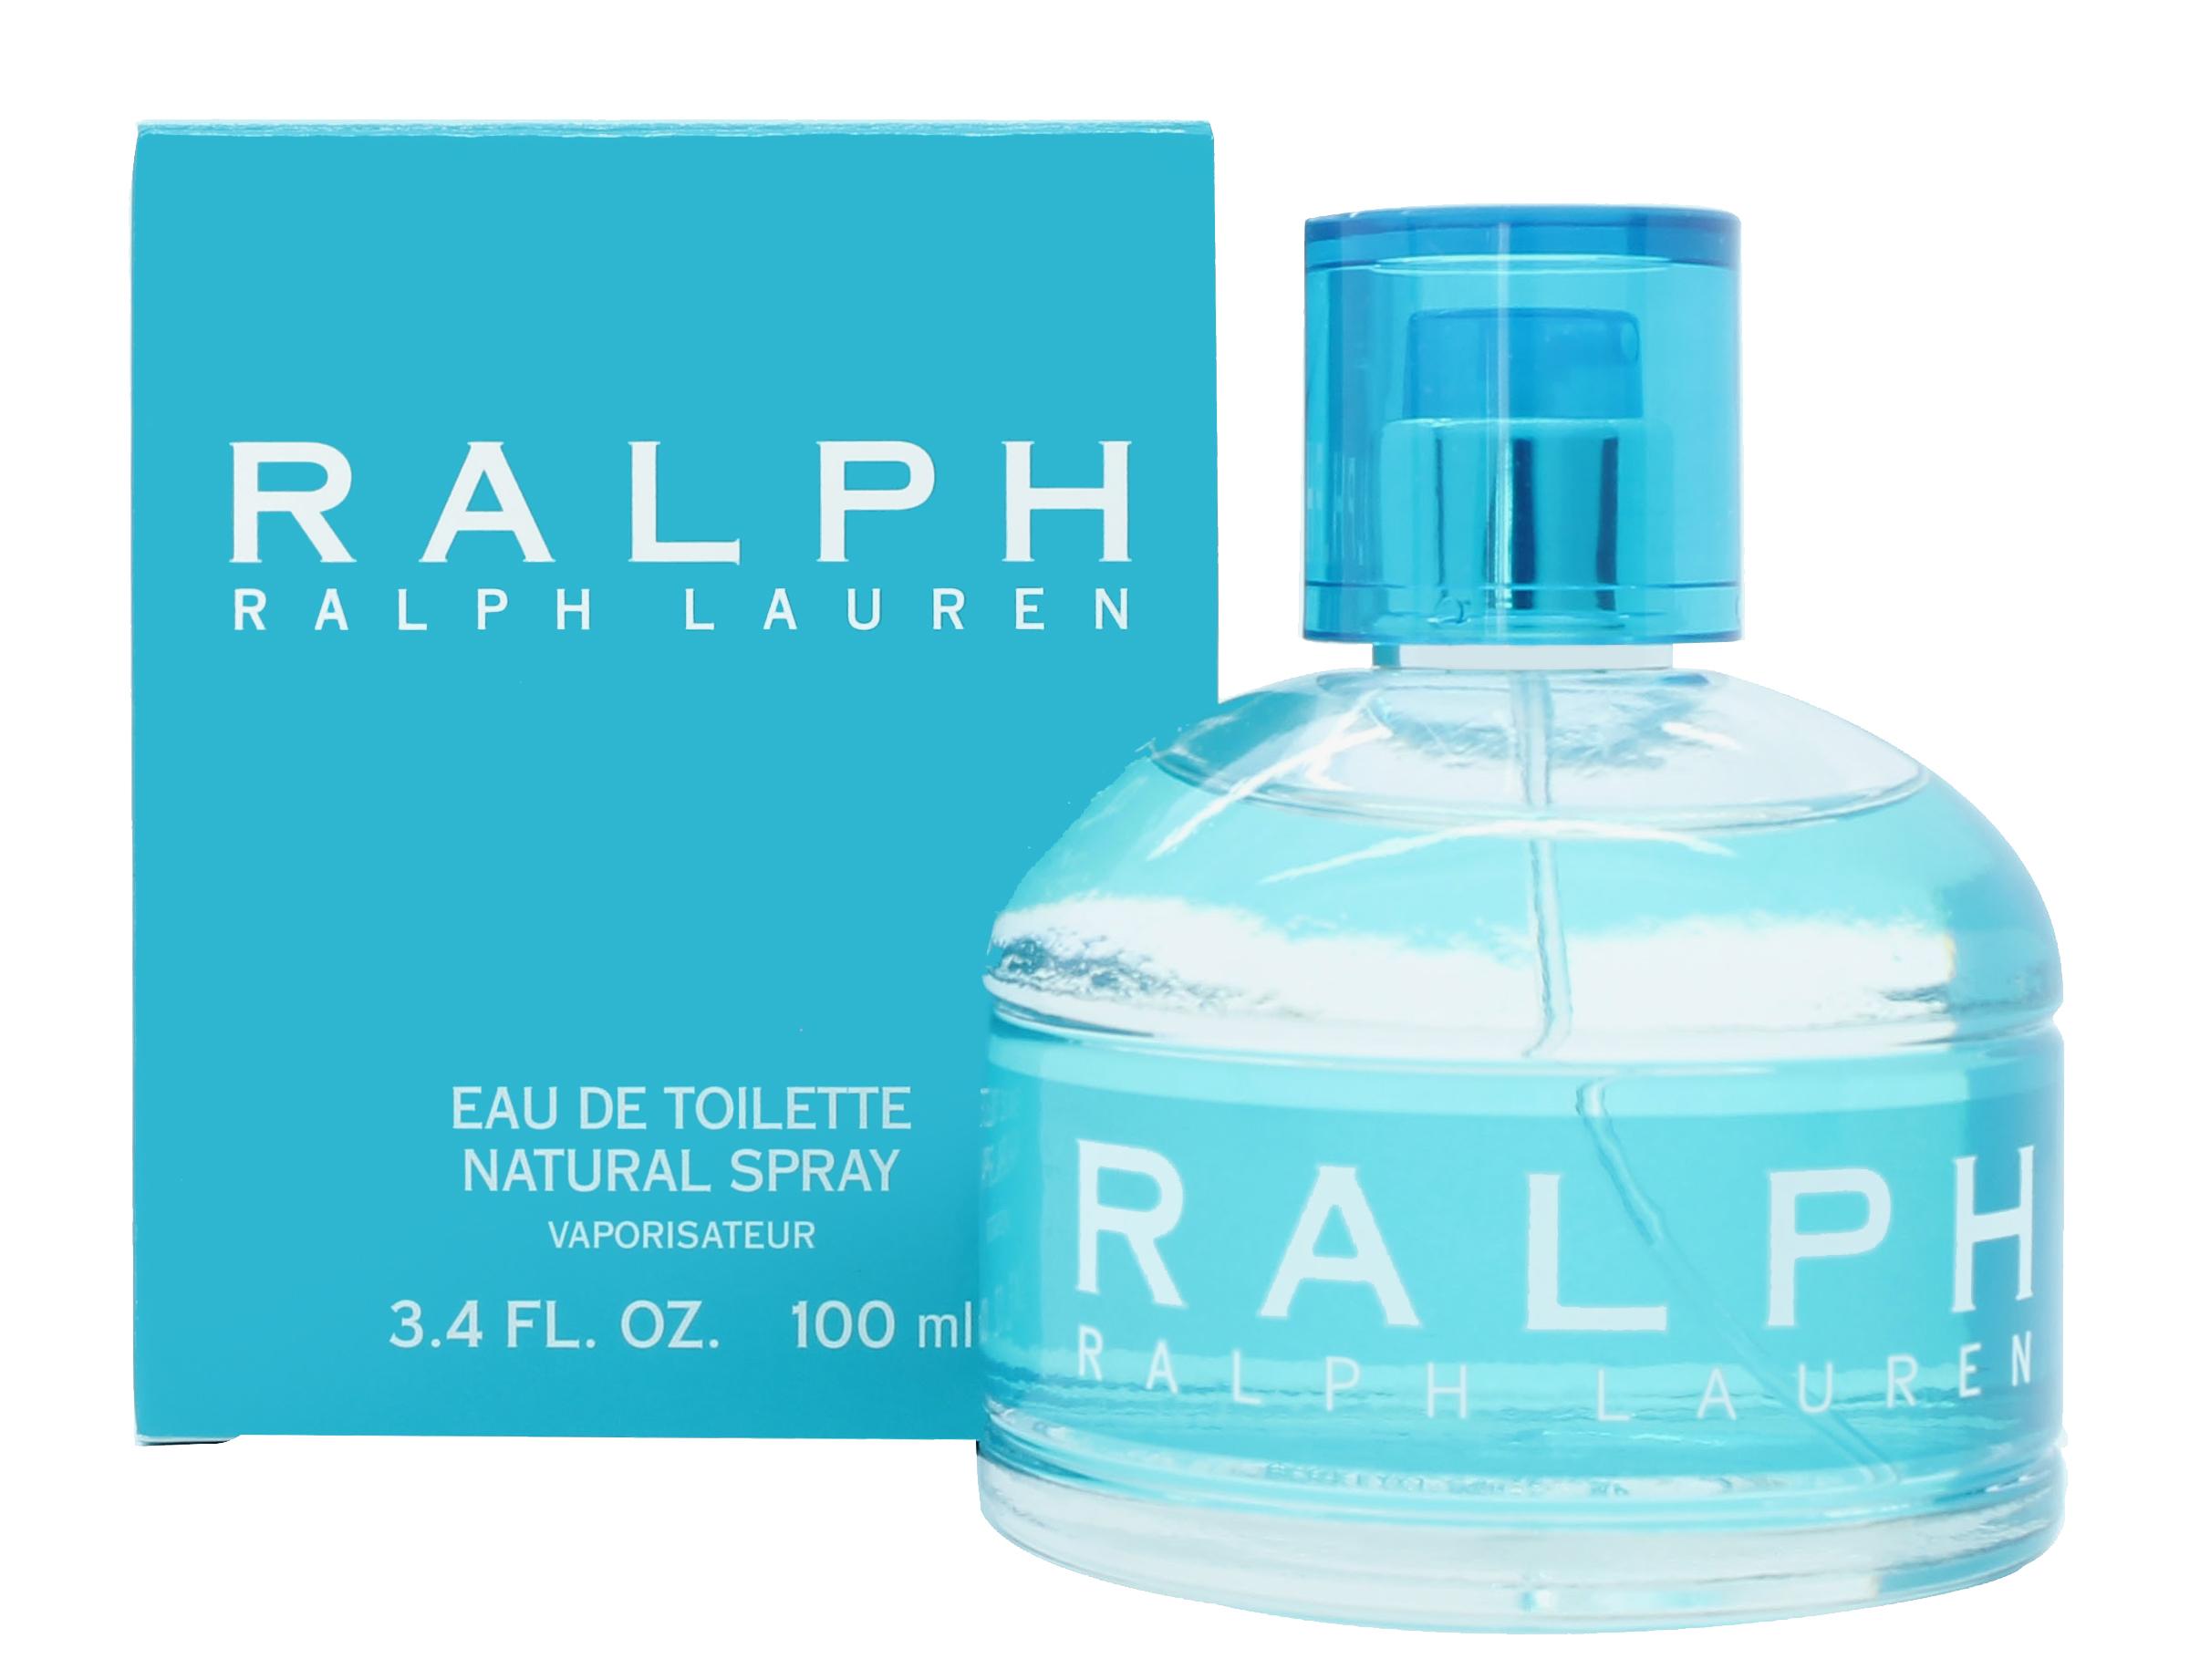 Ralph Lauren Ralph Eau de Toilette 100ml Spray